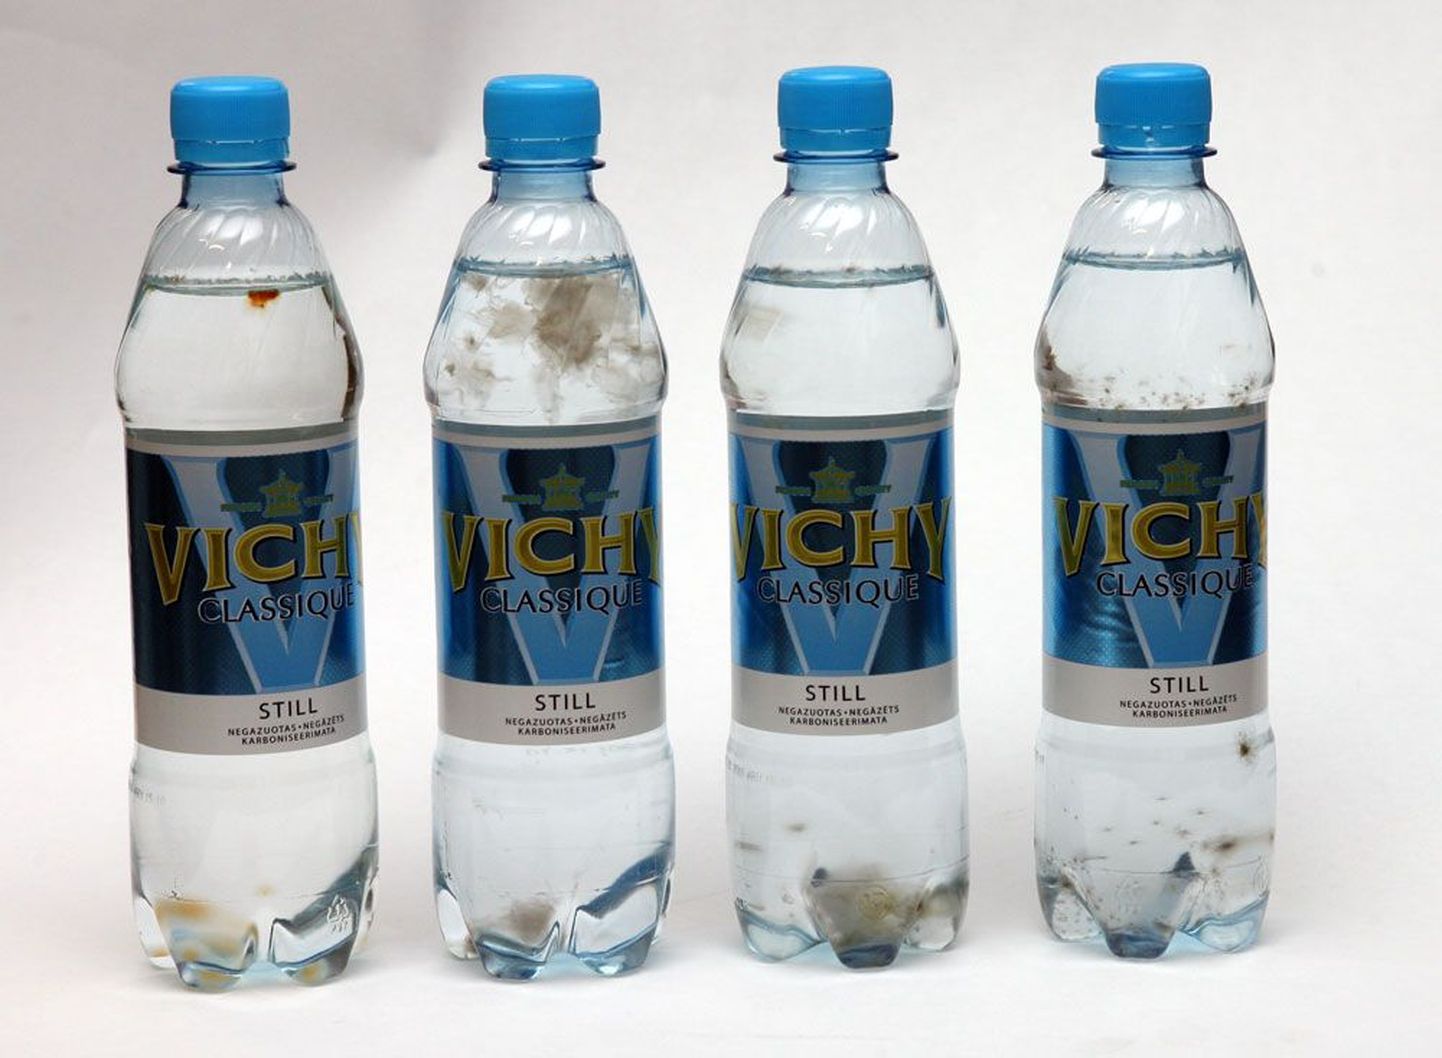 Möödunud aasta novembris Läti tehases pudelisse villitud mineraalvees on vohama hakanud bakterid, mis võivad tekitada põletikku.